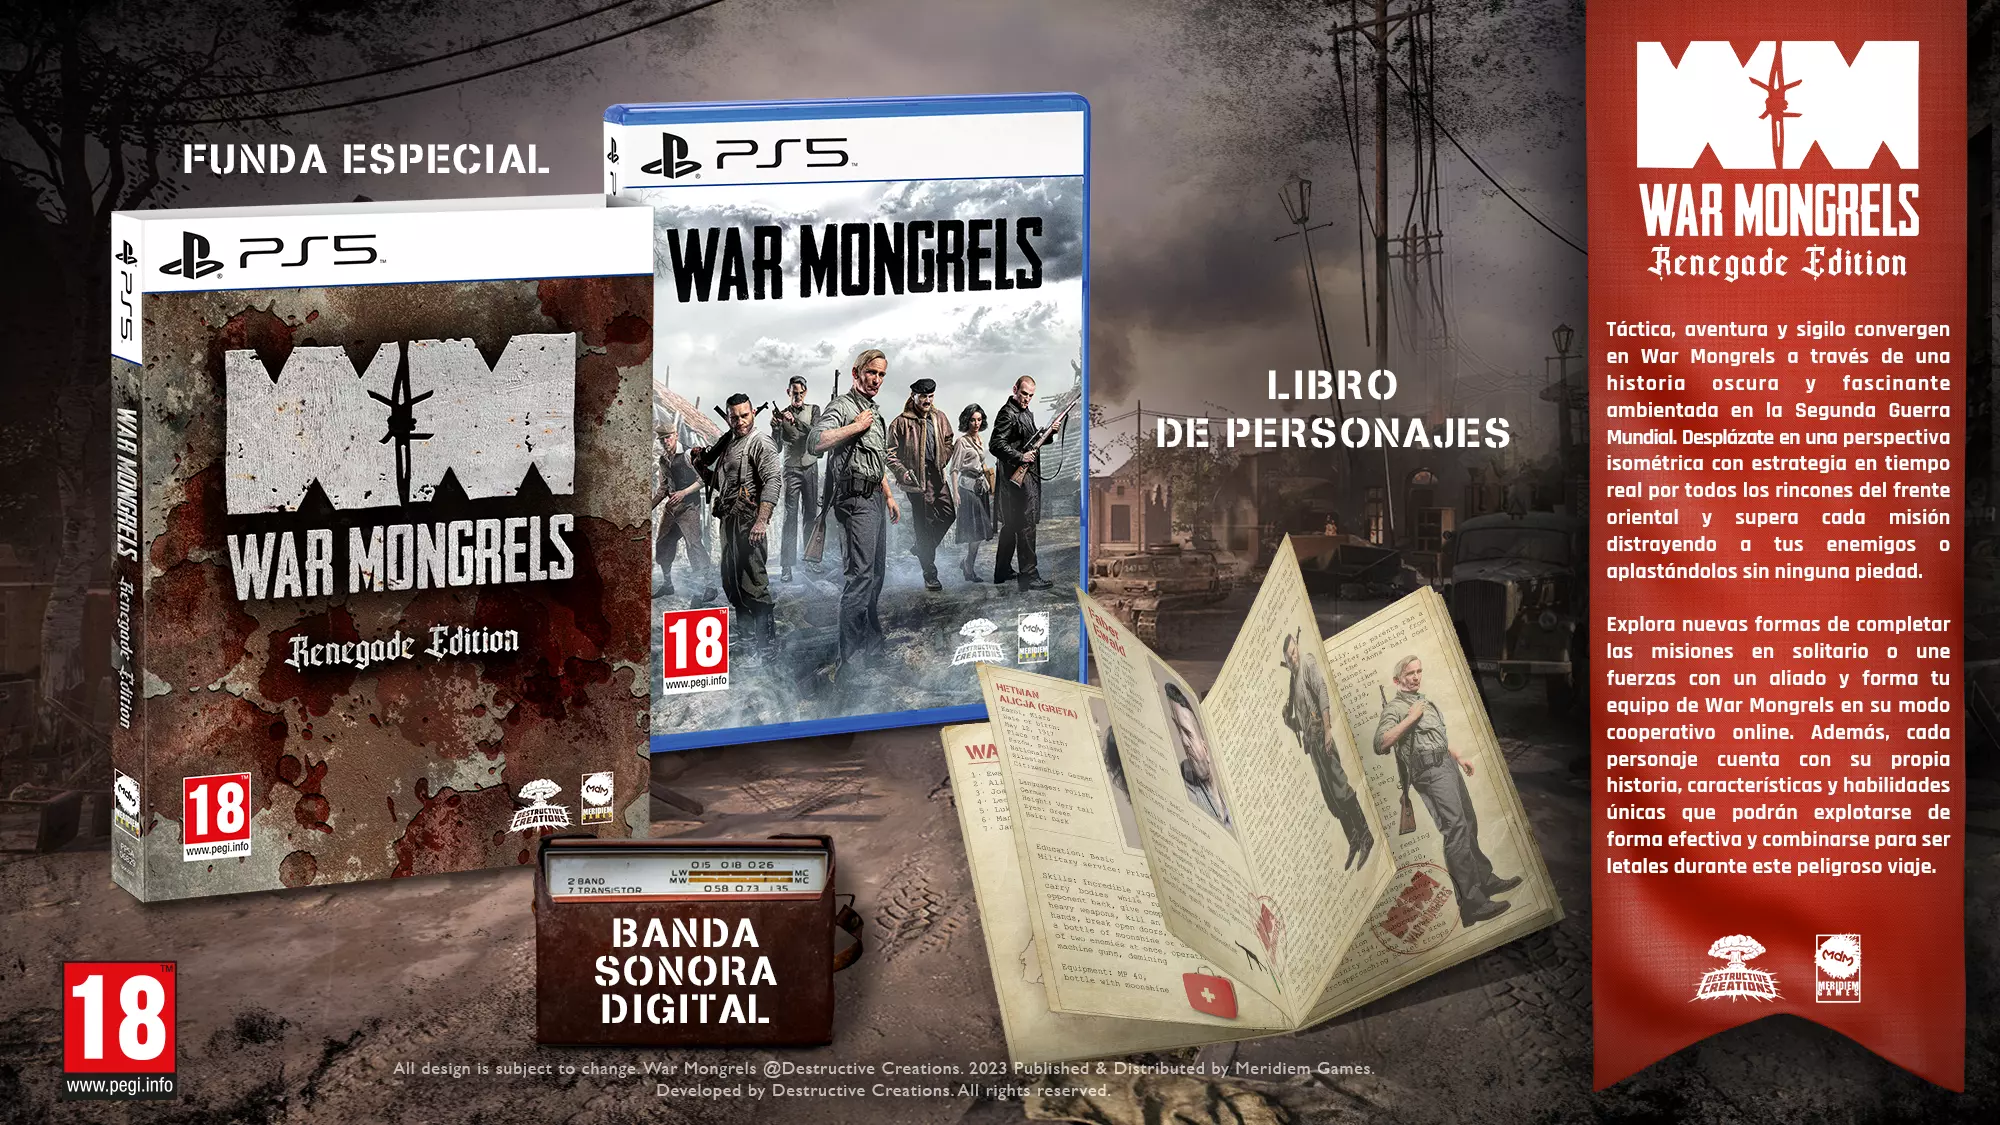 Llançament de l’edició Renegade de War Mongrels per a PlayStation 5